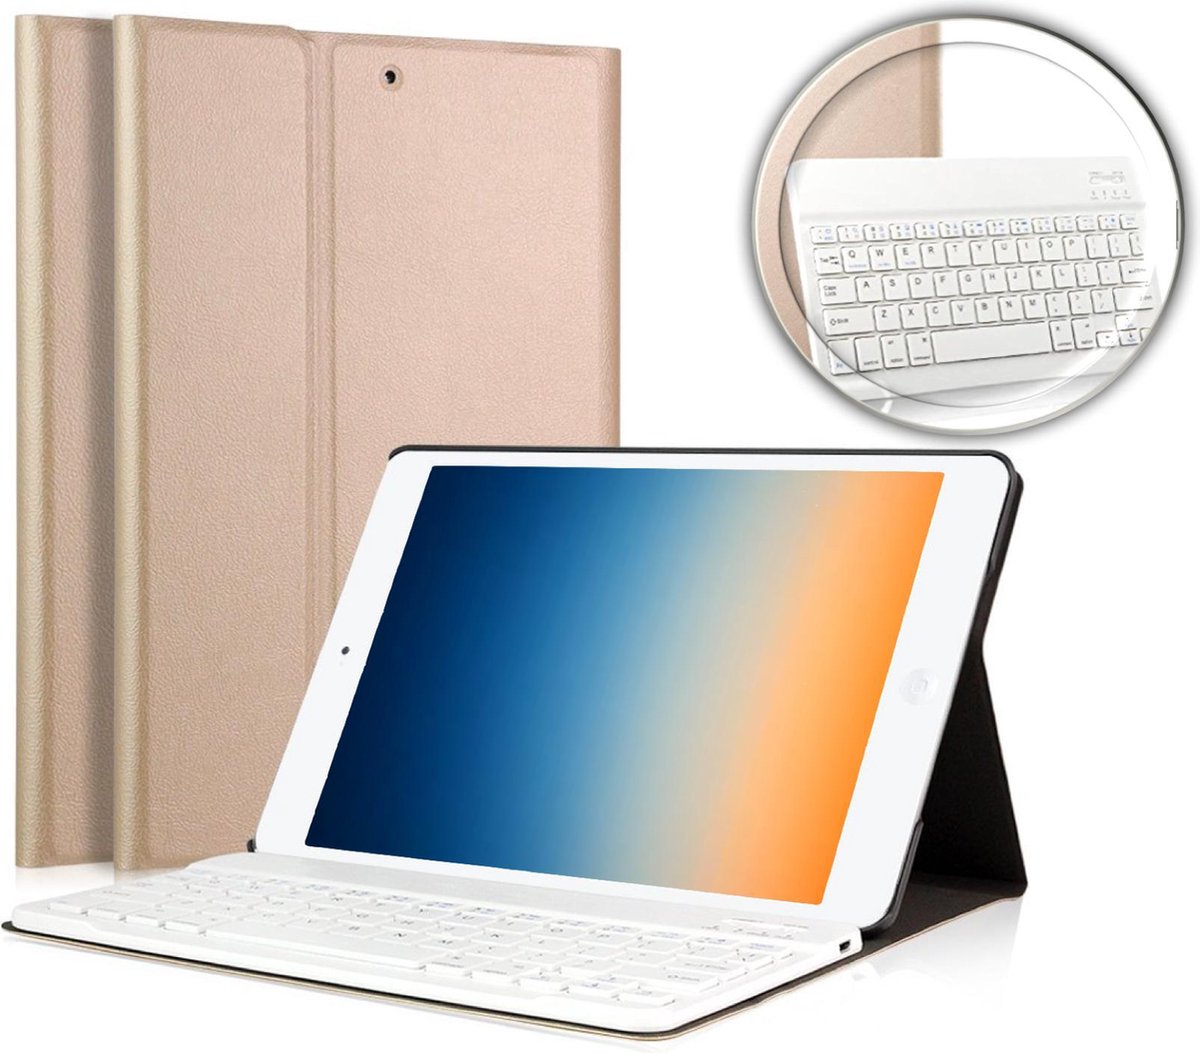 iPad Pro 9.7 Hoes met Toetsenbord - 9.7 inch - iPad Pro 9.7 Hoes Book Case Cover Hoesje met Toetsenbord Goud - iCall